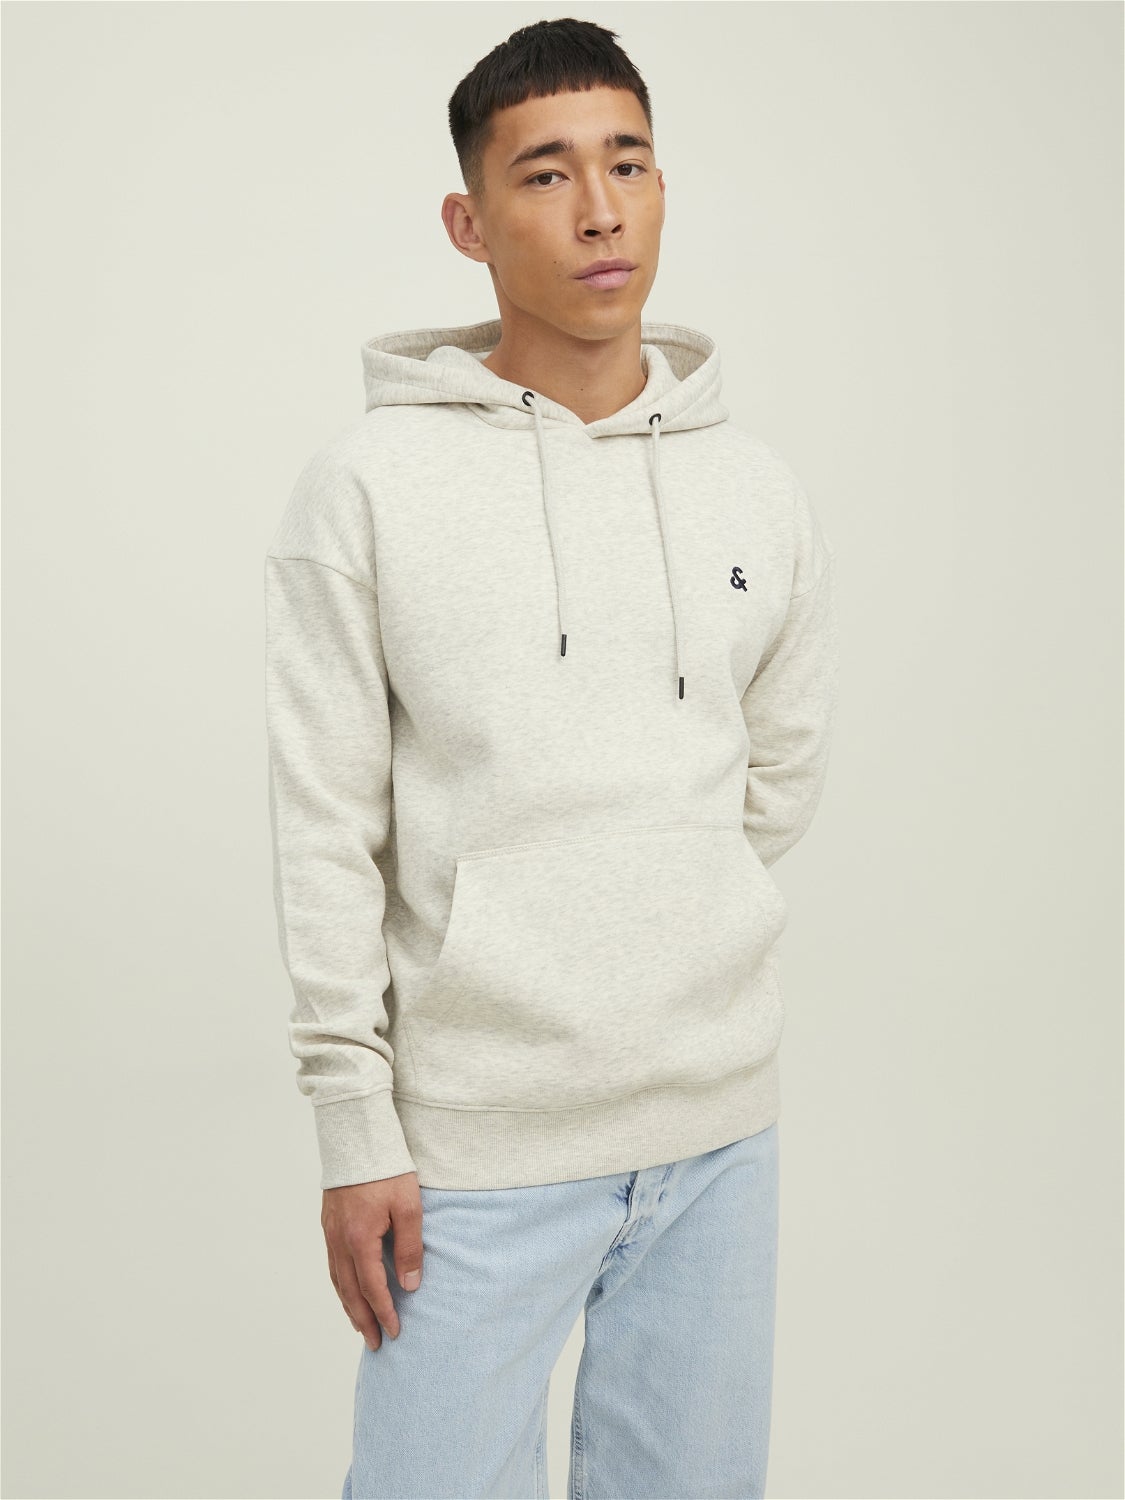 Rabatt 58 % HERREN Pullovers & Sweatshirts Hoodie Rot XL Jack & Jones sweatshirt 